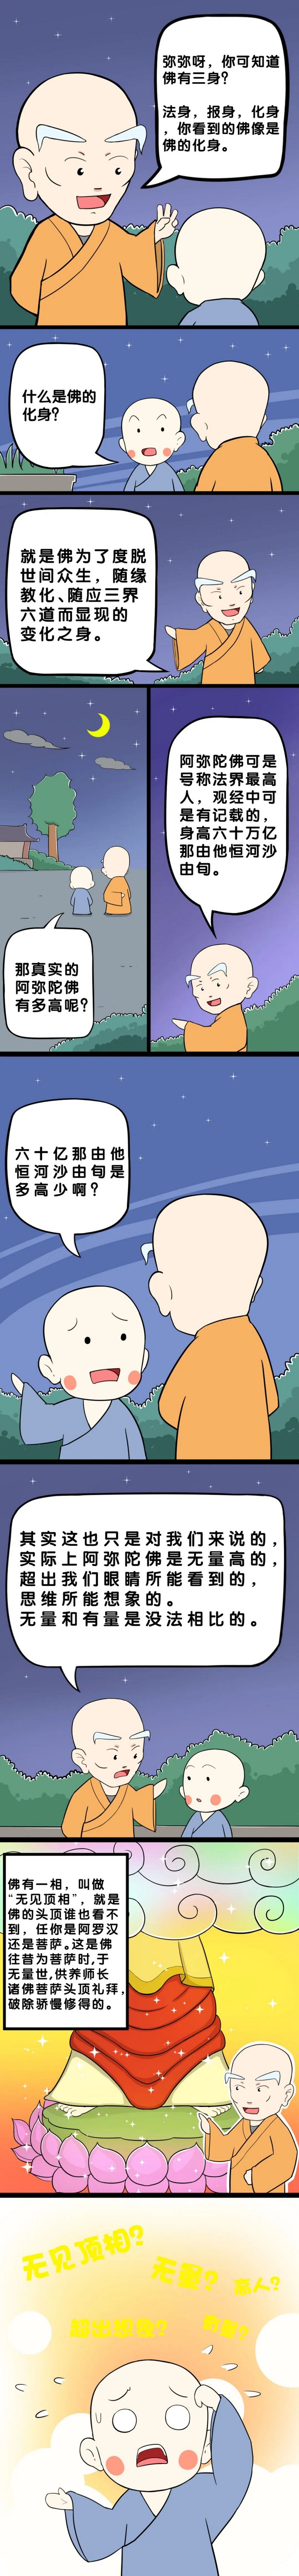 【佛學漫畫】法界第一高人